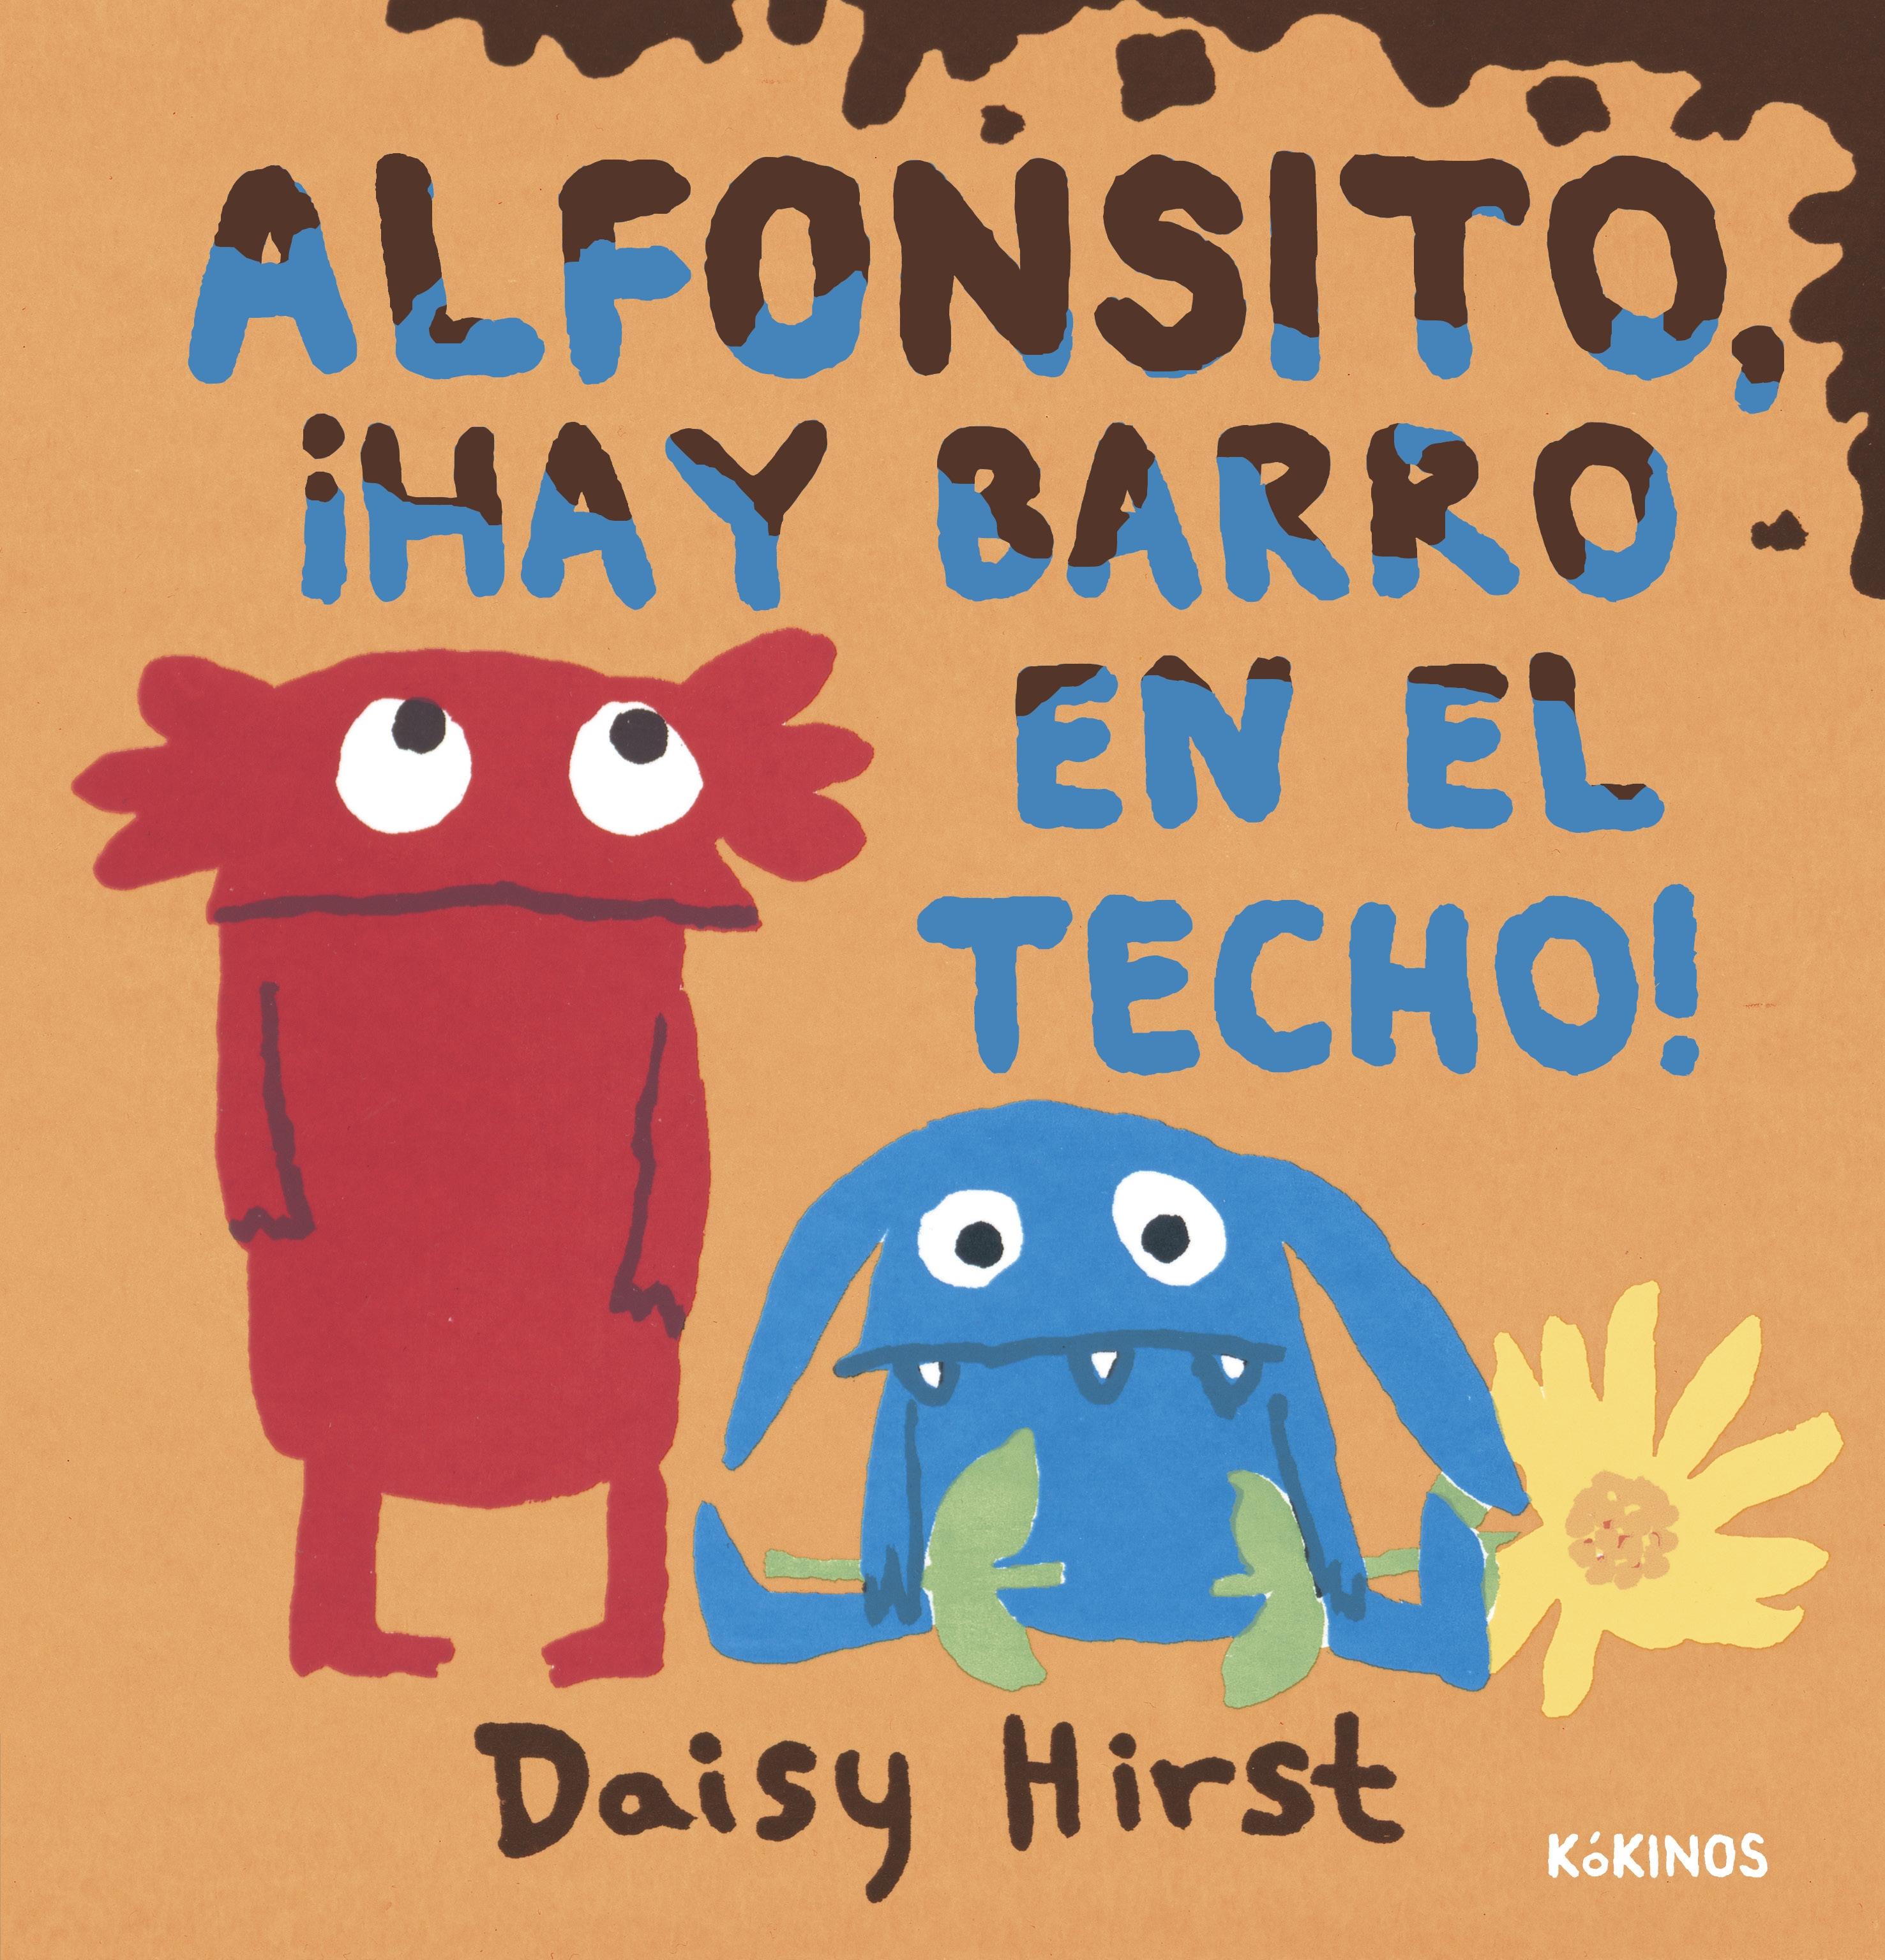 Alfonsito, ¡Hay Barro en el Techo!. 